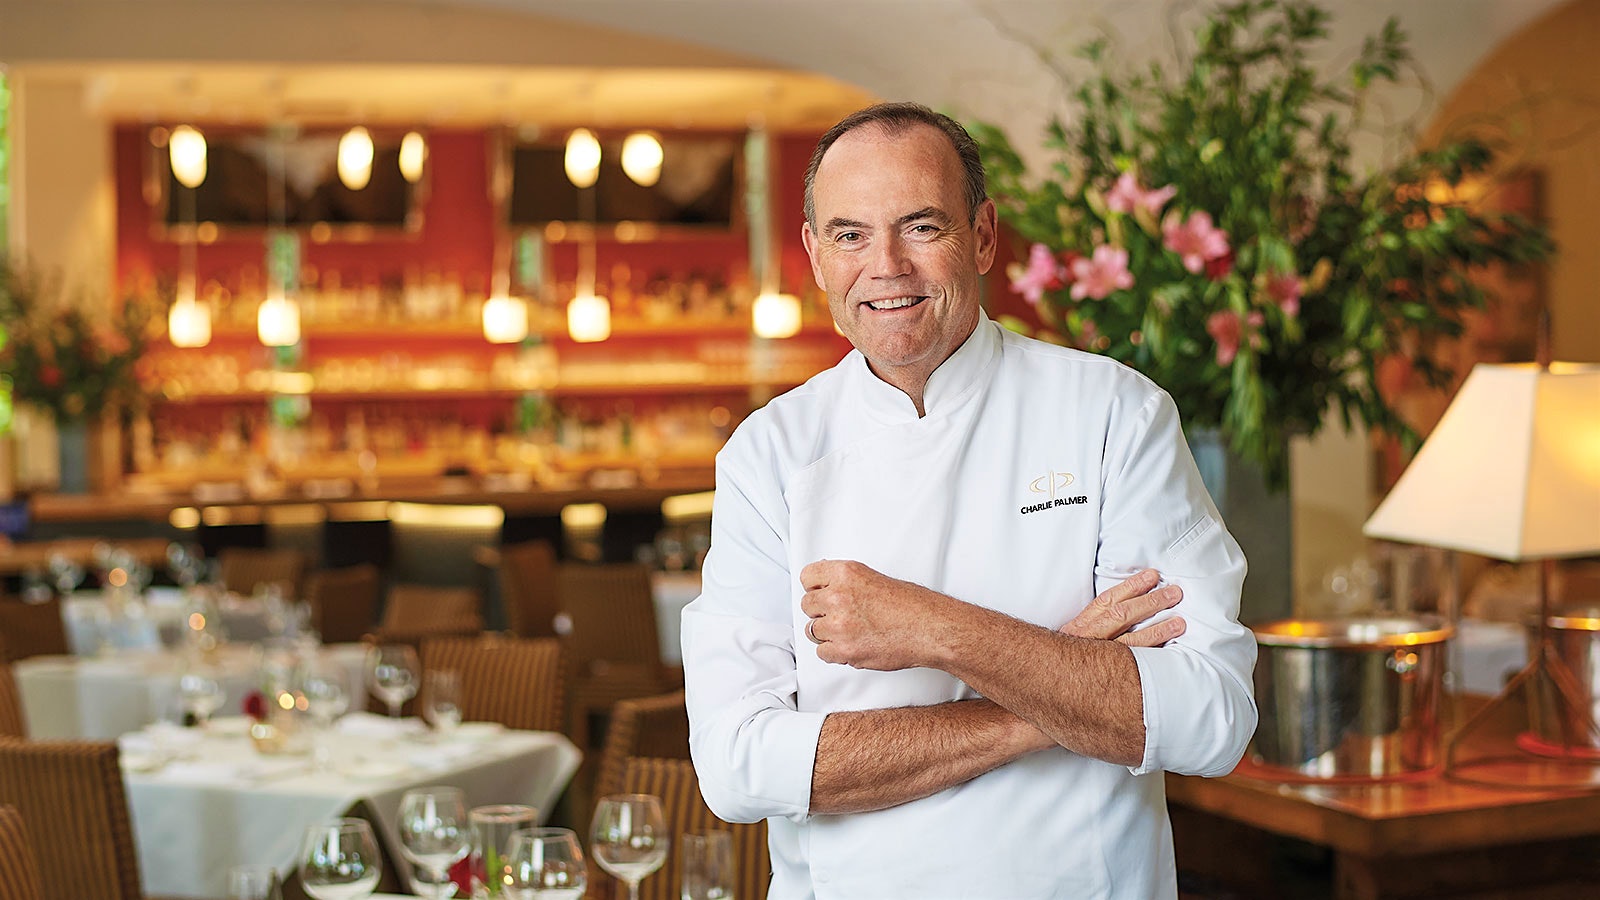  Retrato del chef Charlie Palmer con los brazos cruzados en su restaurante Dry Creek Kitchen